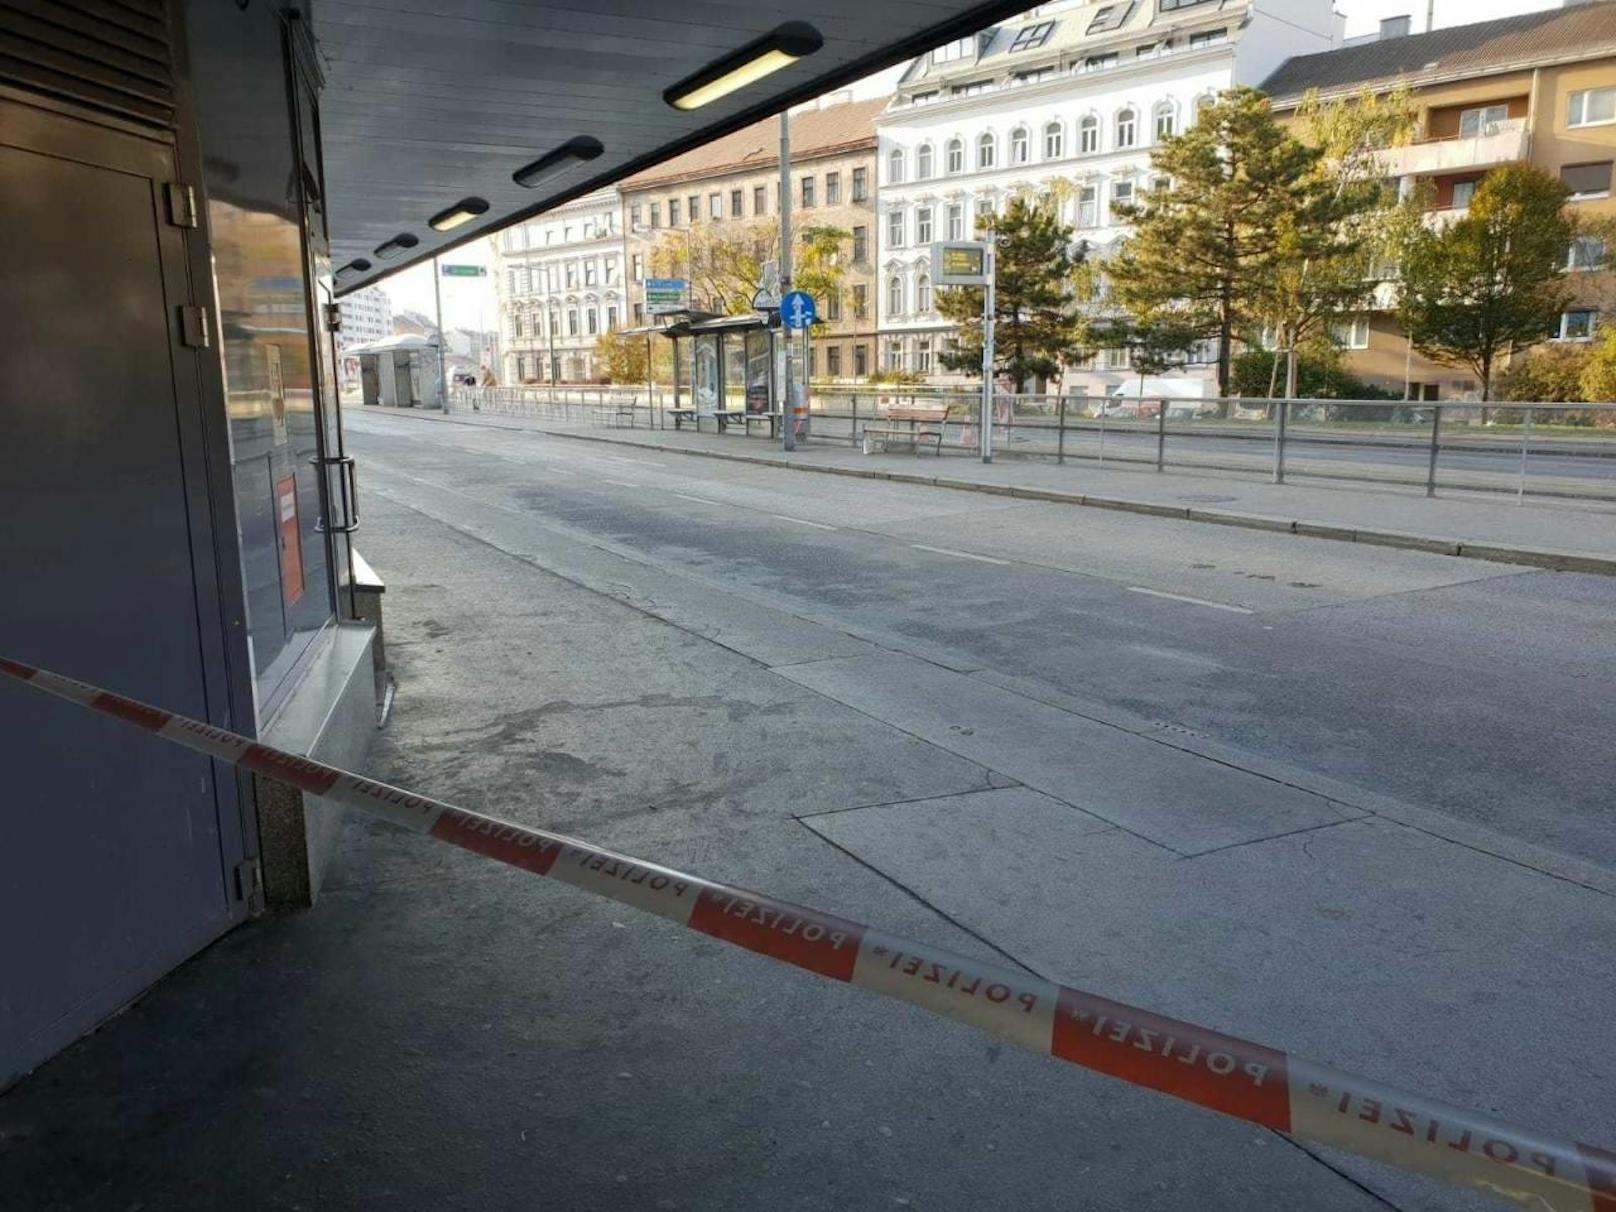 Die Öffi-Linie U4 wurde Mittwochnachmittag unterbrochen, der Nahbereich der Station Meidling gesperrt. Ein verdächtiger Gegenstand wird geprüft.